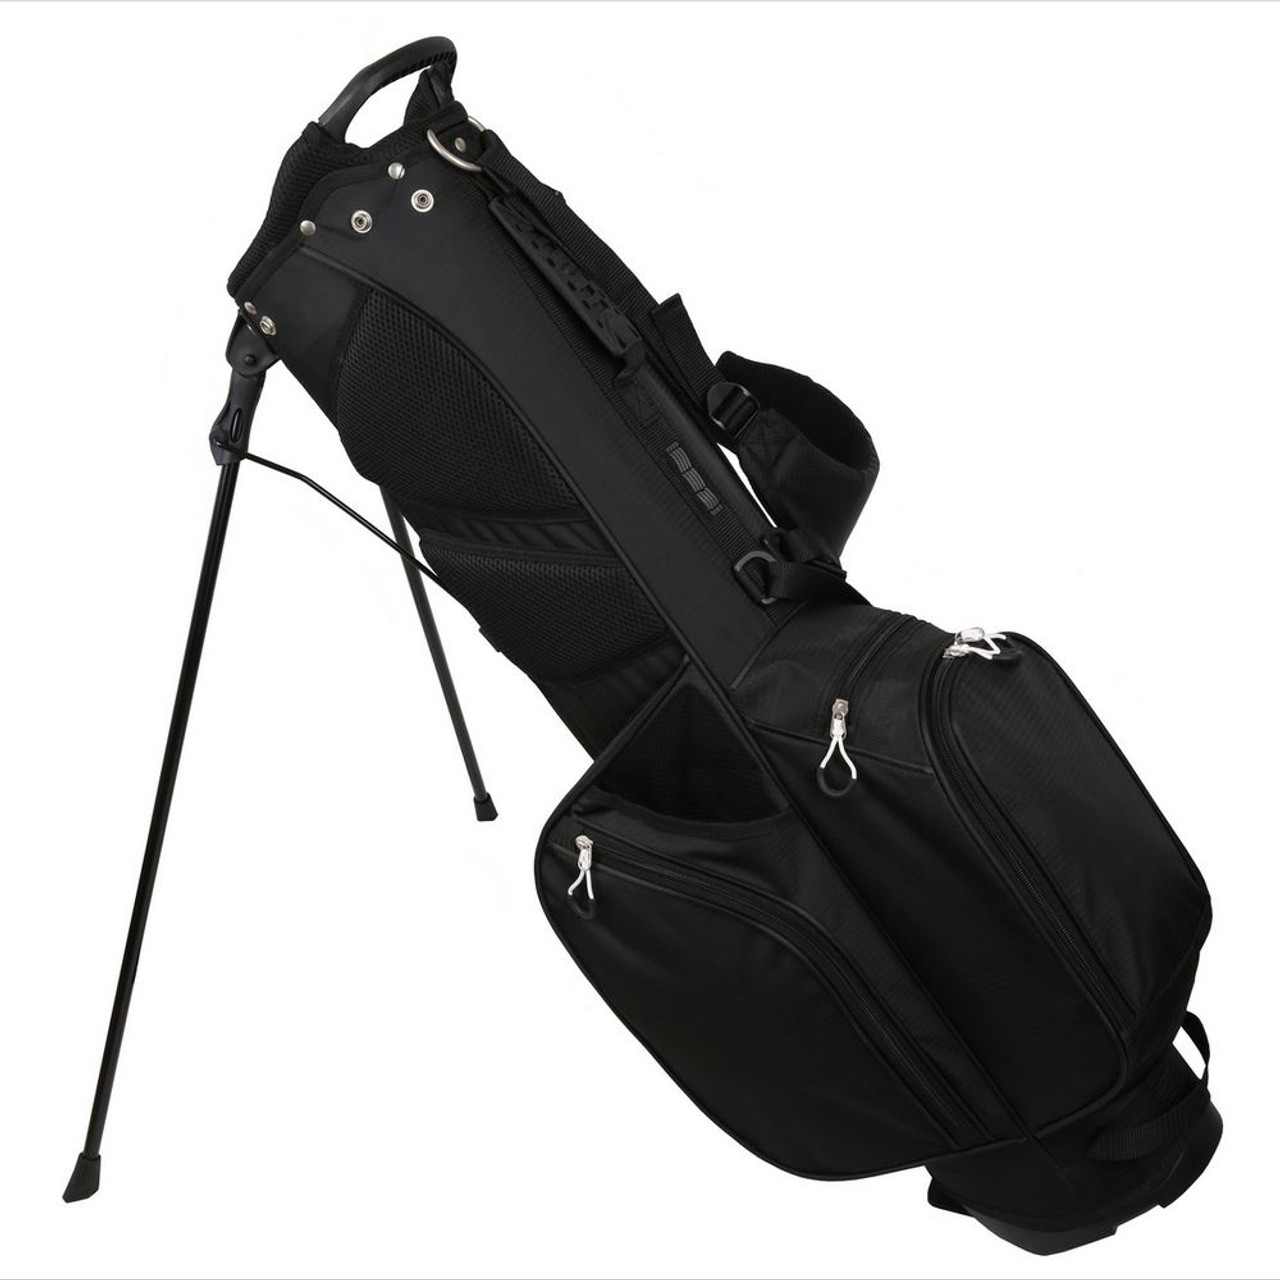 MacGregor Golf MacTec Stand Bag - Slim Lightweight 7